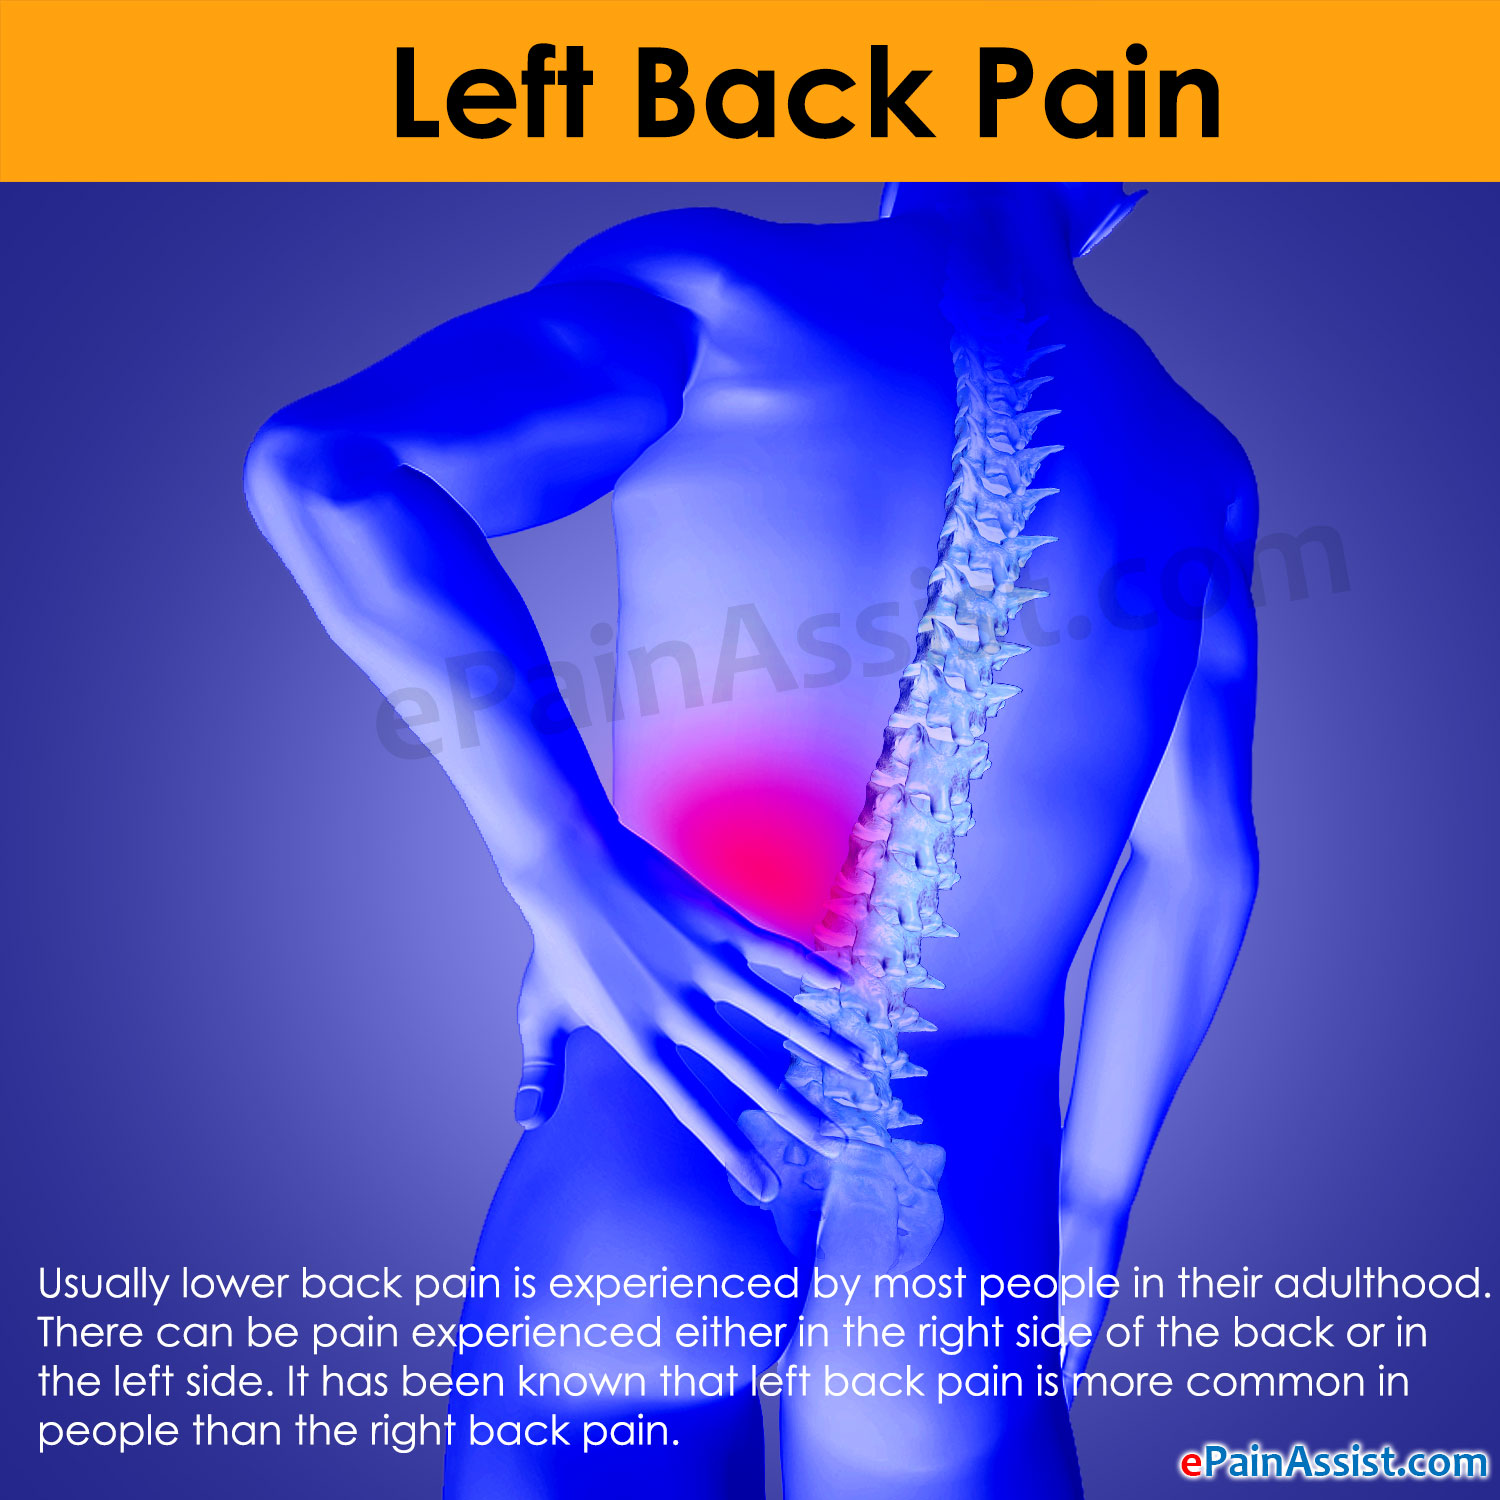 Left Back Pain|Symptoms|Causes|Treatment|Prevention